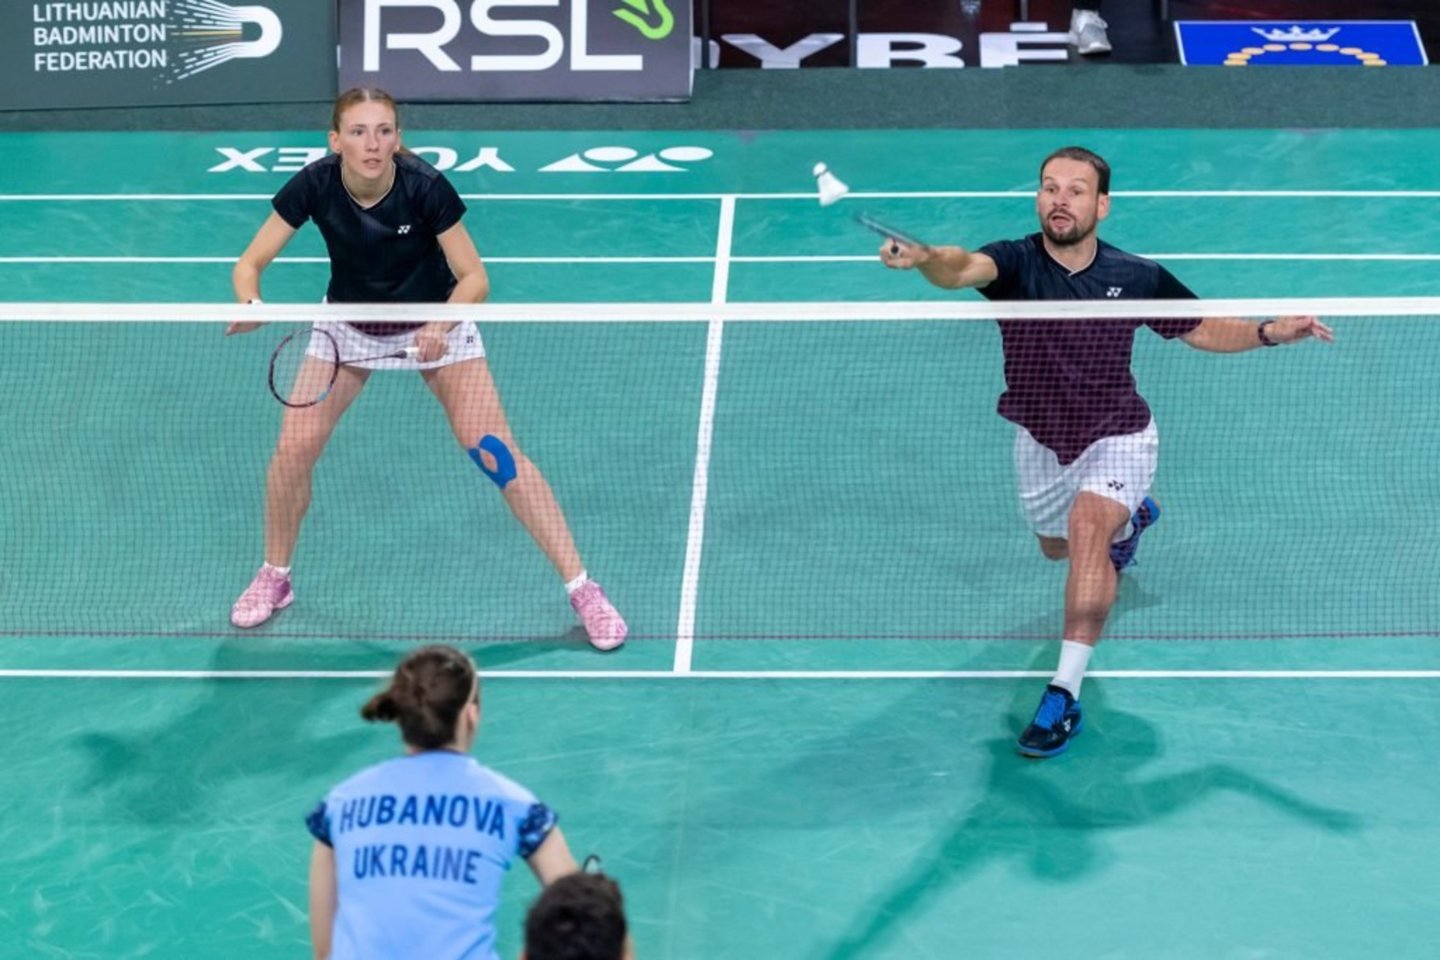 Lietuvos kurtieji badmintoninkai puikiai pasirodė Europos čempionate.<br>Augusto Četkausko (LKSK) nuotr.